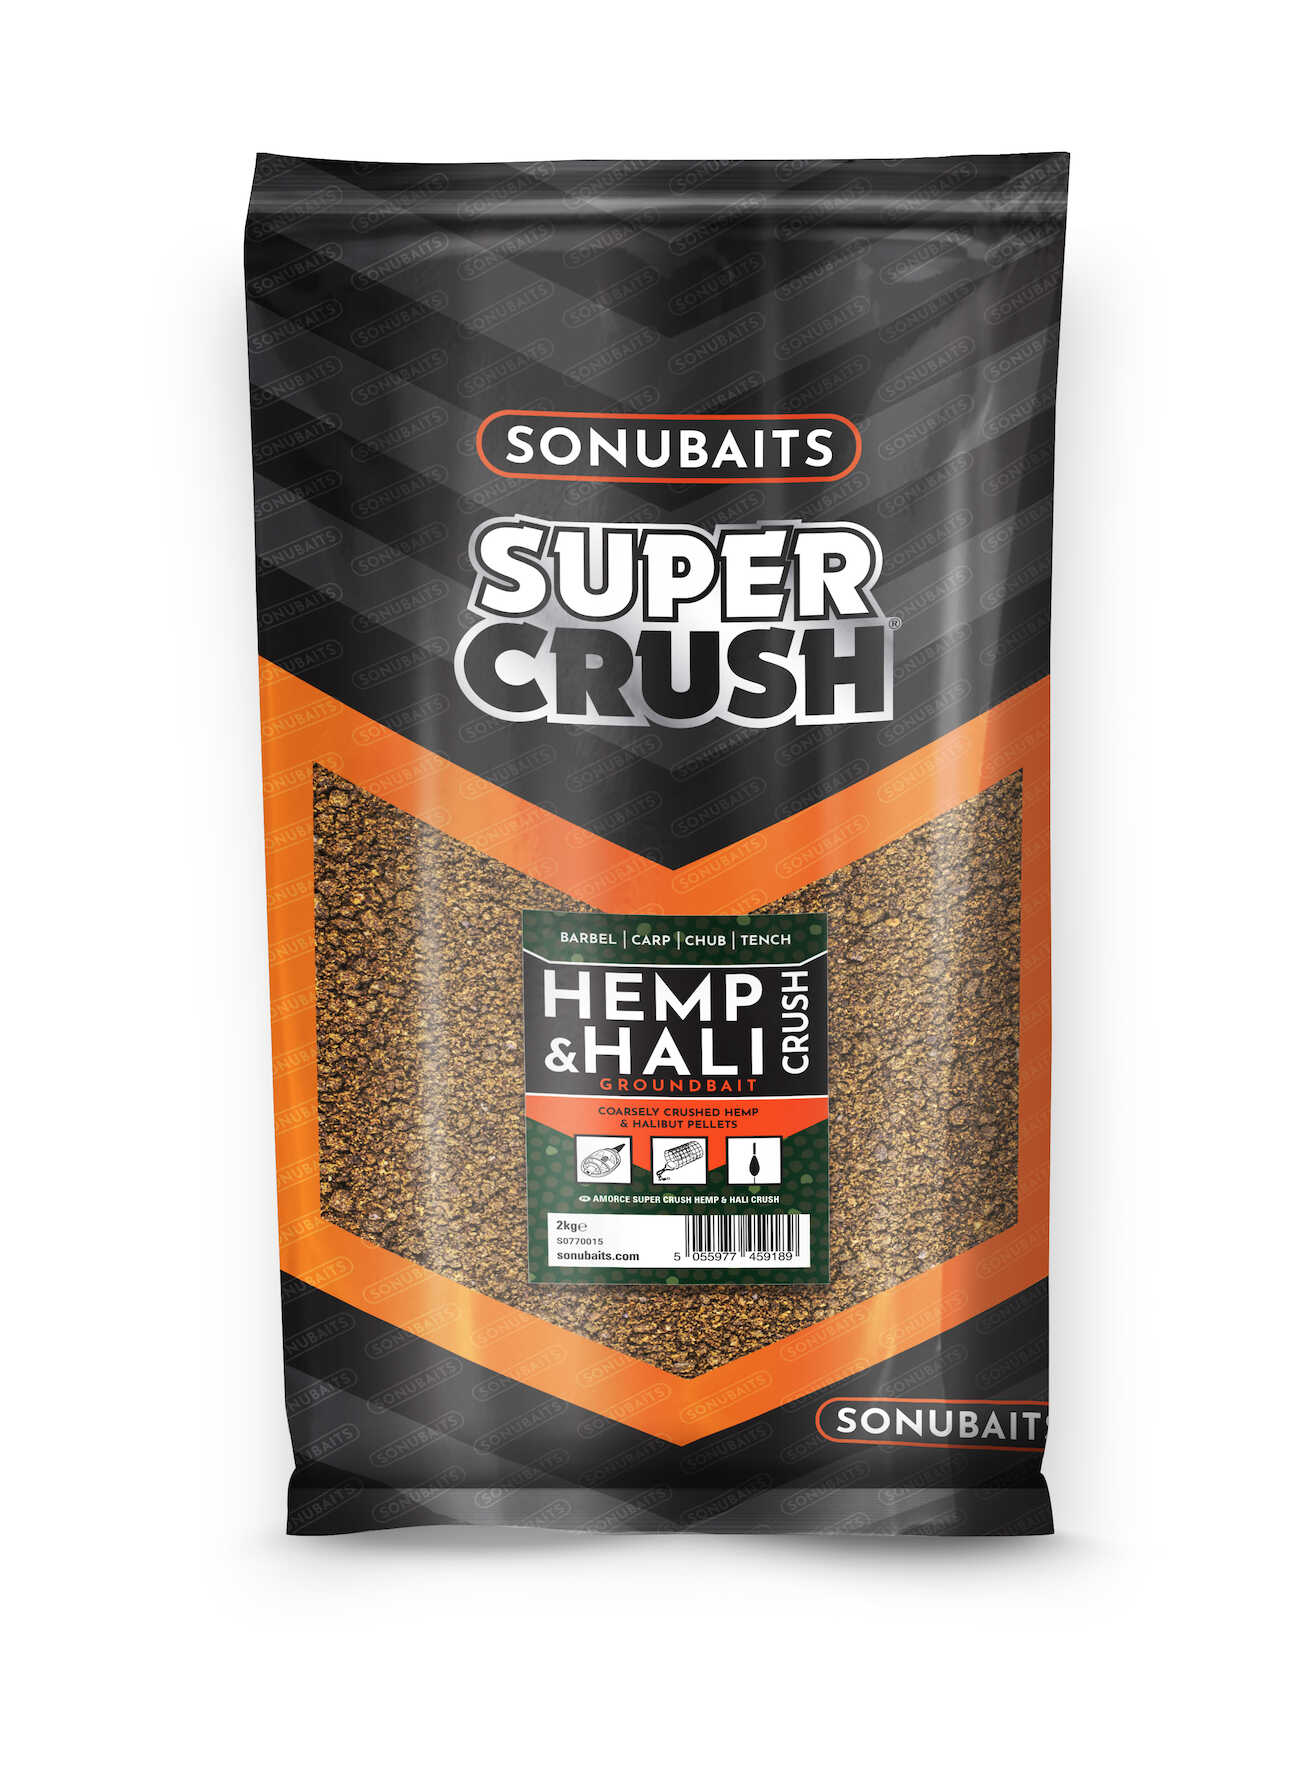 Sonubaits Supercrush Hemp & Hali Cebo (2kg)